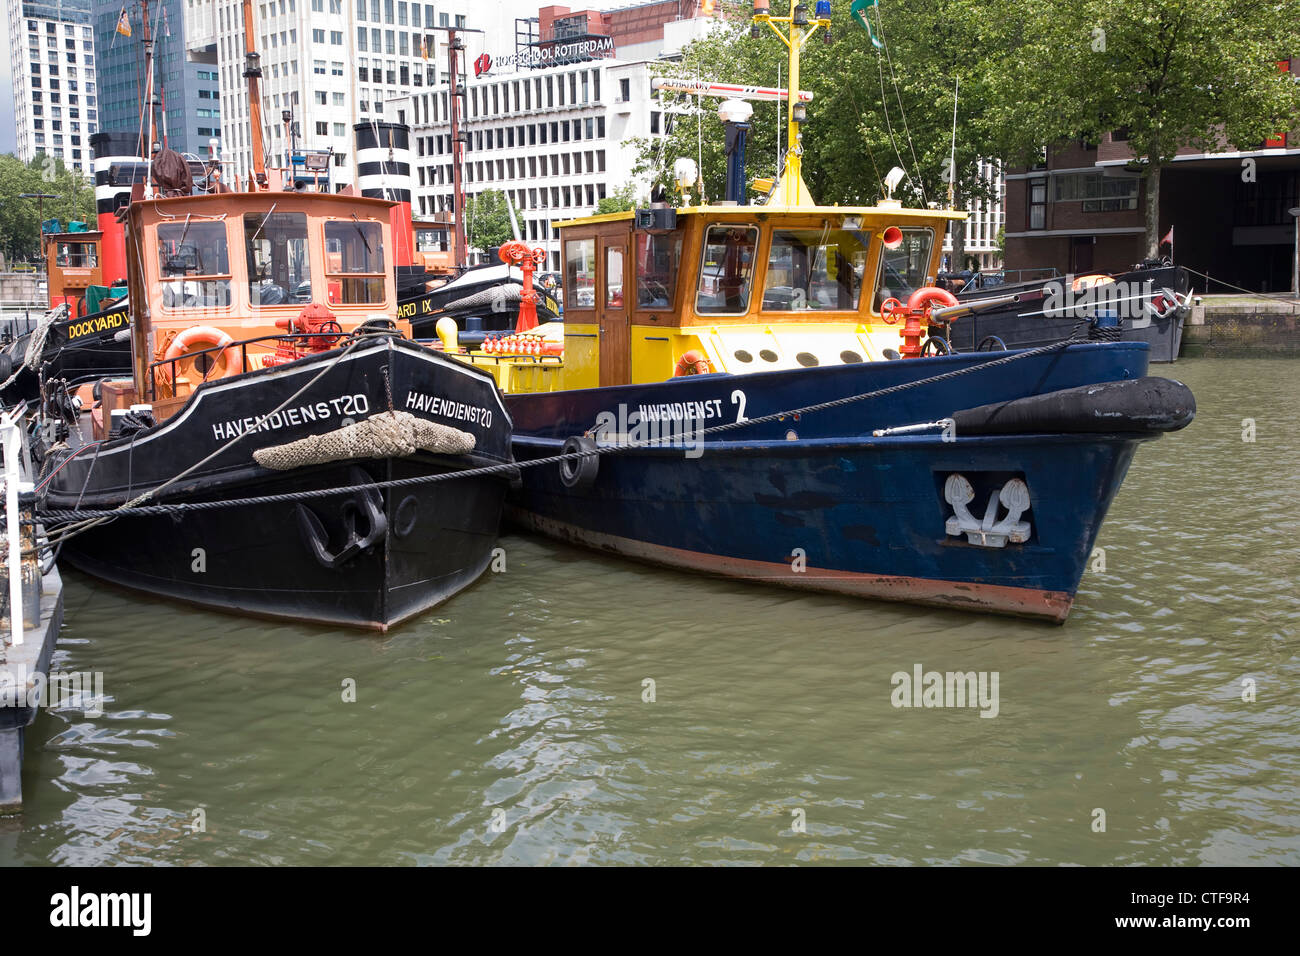 Bateaux et navires historiques dans le havre musée, Leuvehaven, Rotterdam,  Pays-Bas Photo Stock - Alamy